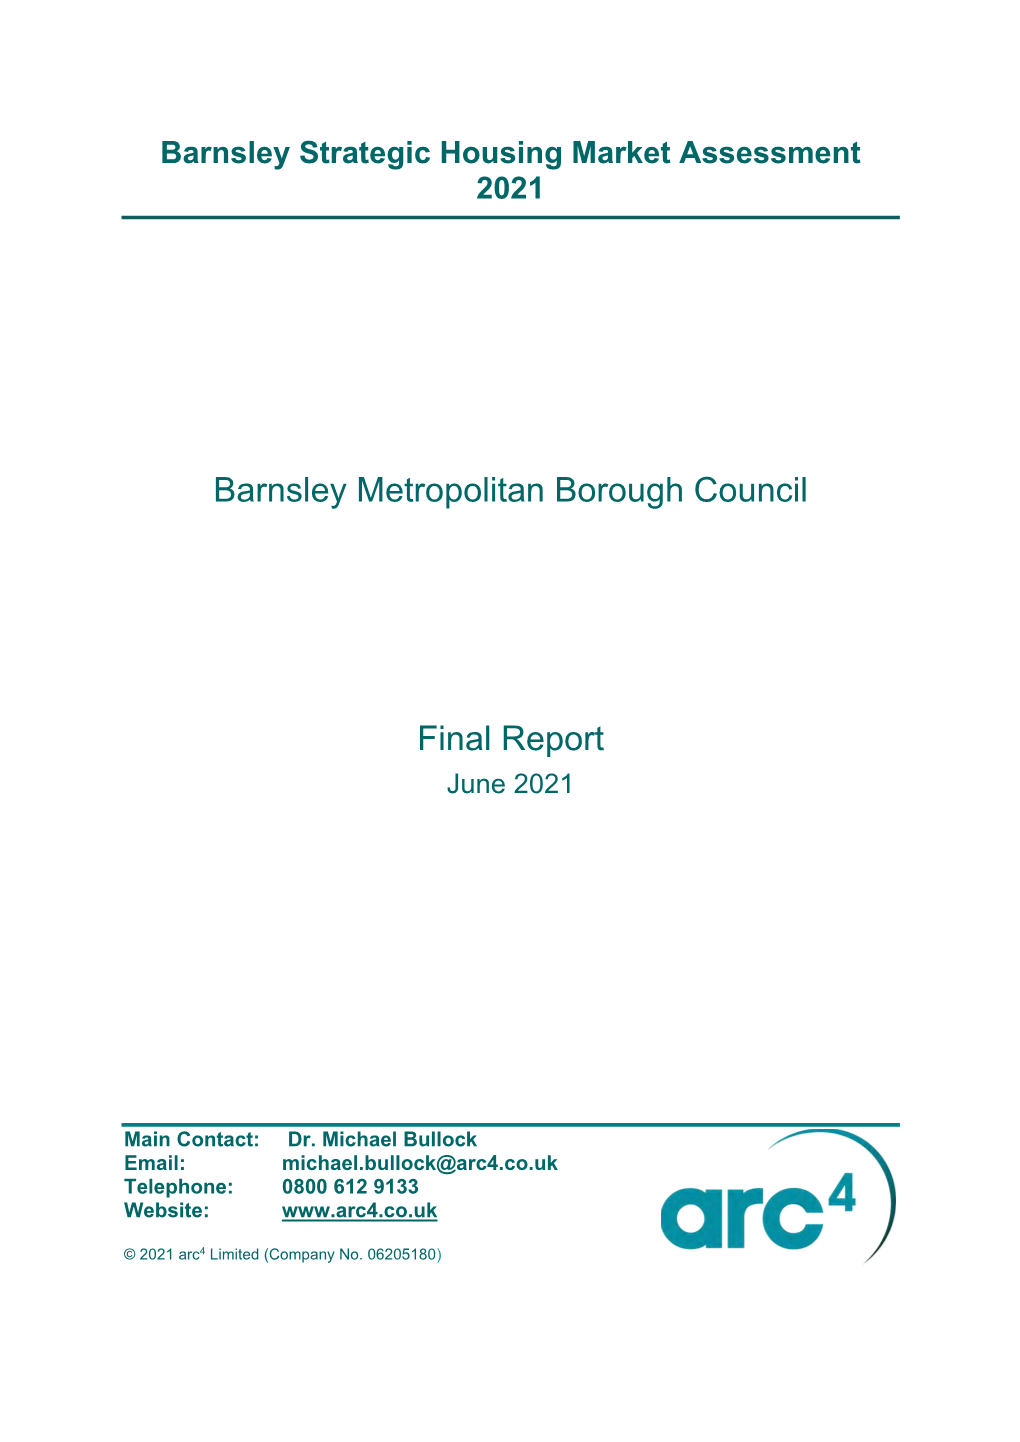 Barnsley Strategic Housing Market Assessment 2021